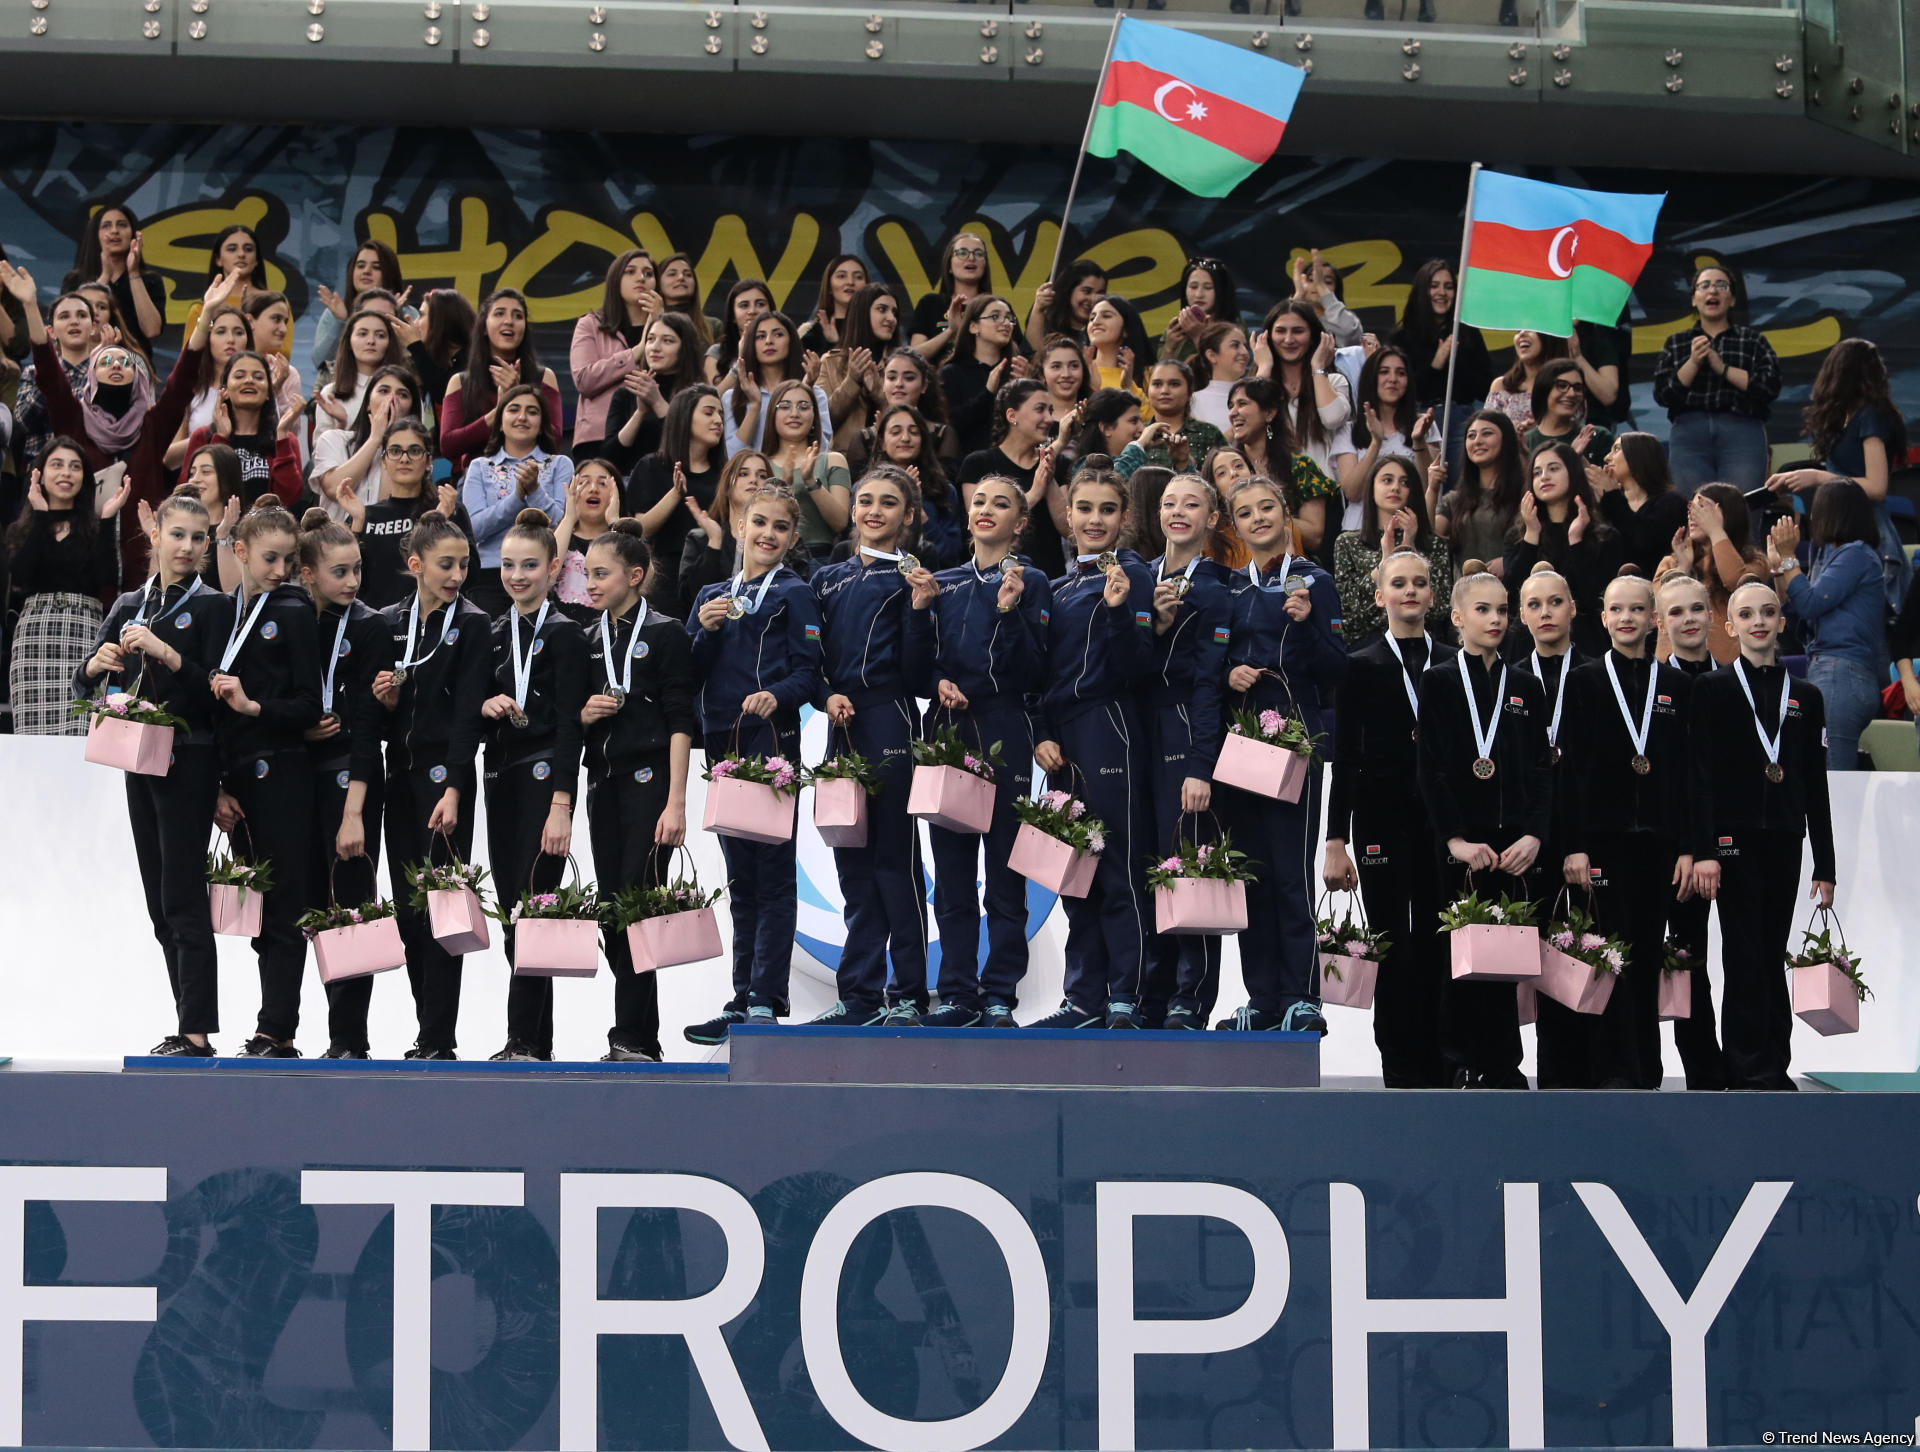 У Азербайджана «золото» и «серебро»: в Баку награждены победители AGF Junior Trophy среди команд в групповых упражнениях с пятью обручами и пятью лентами (ФОТО)